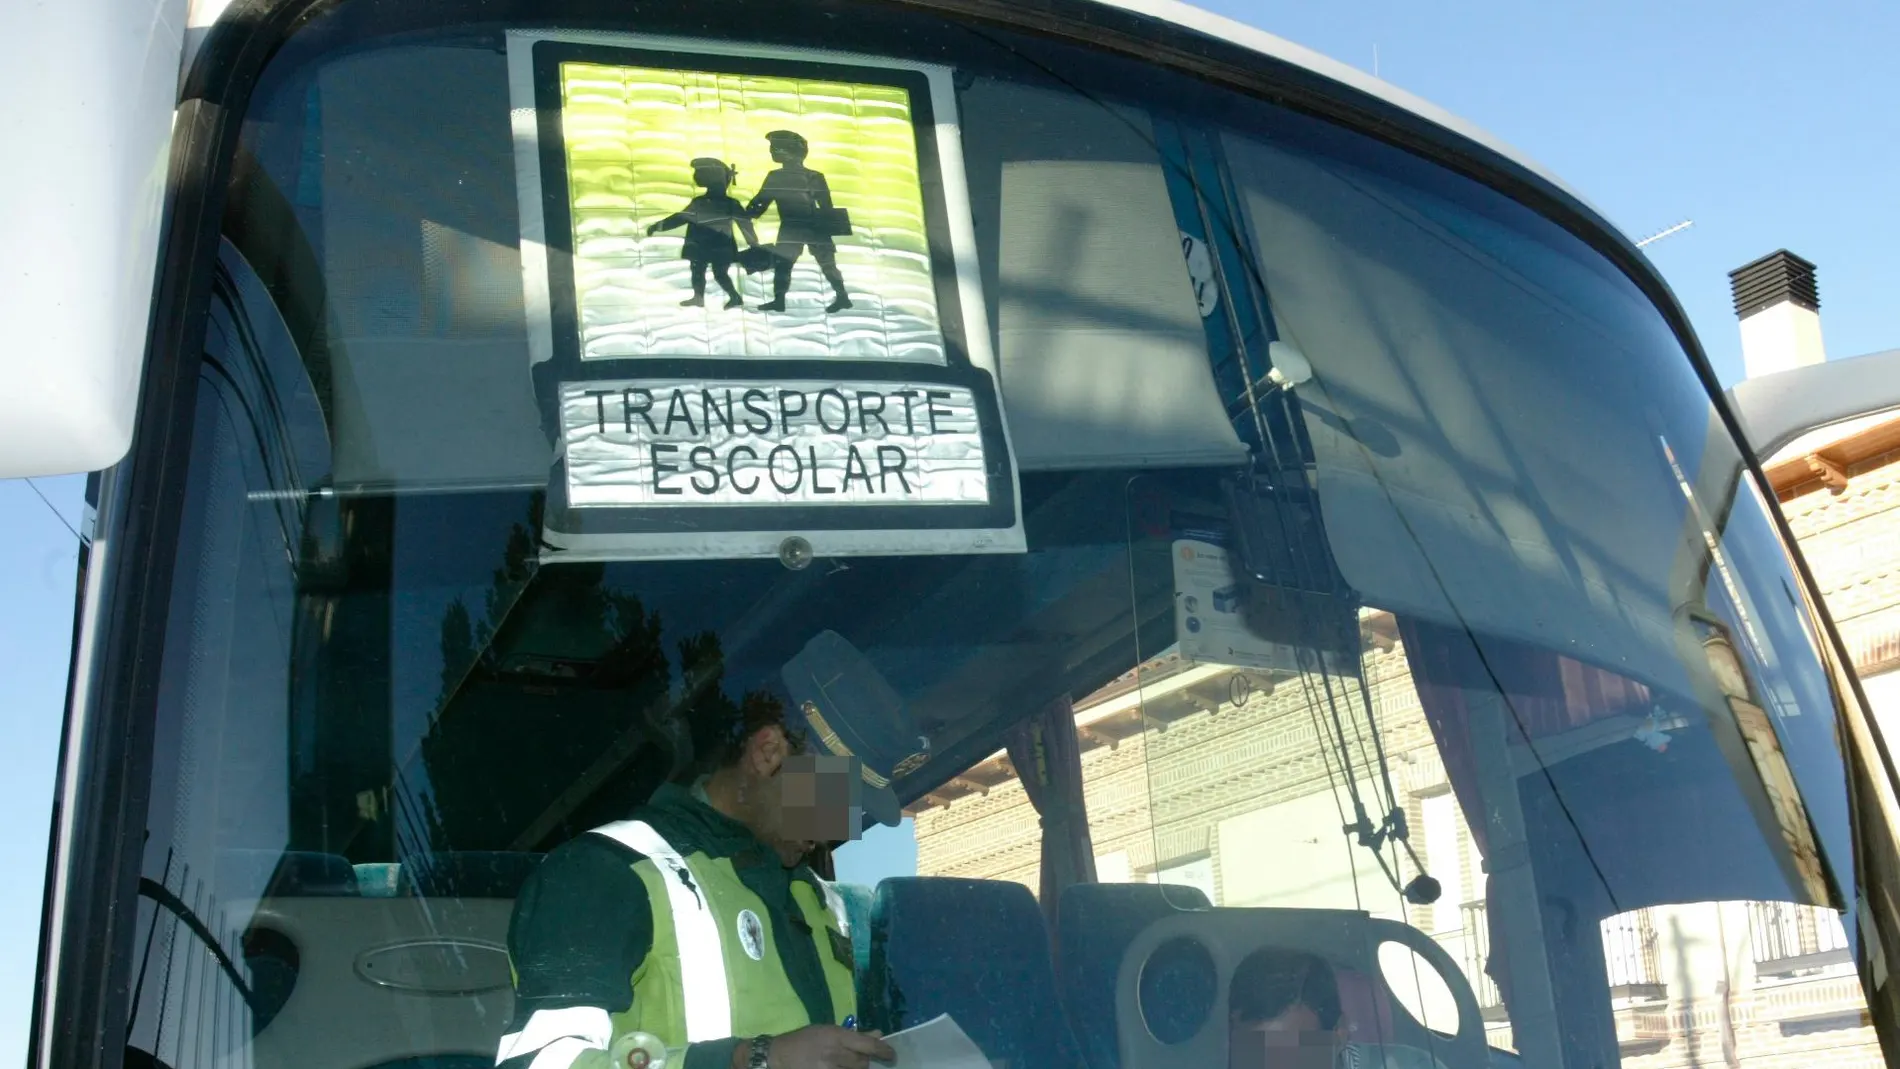 El autobús se dirigía hacía el municipio de Bolaños de Calatrava/foto: Rubén Mondelo